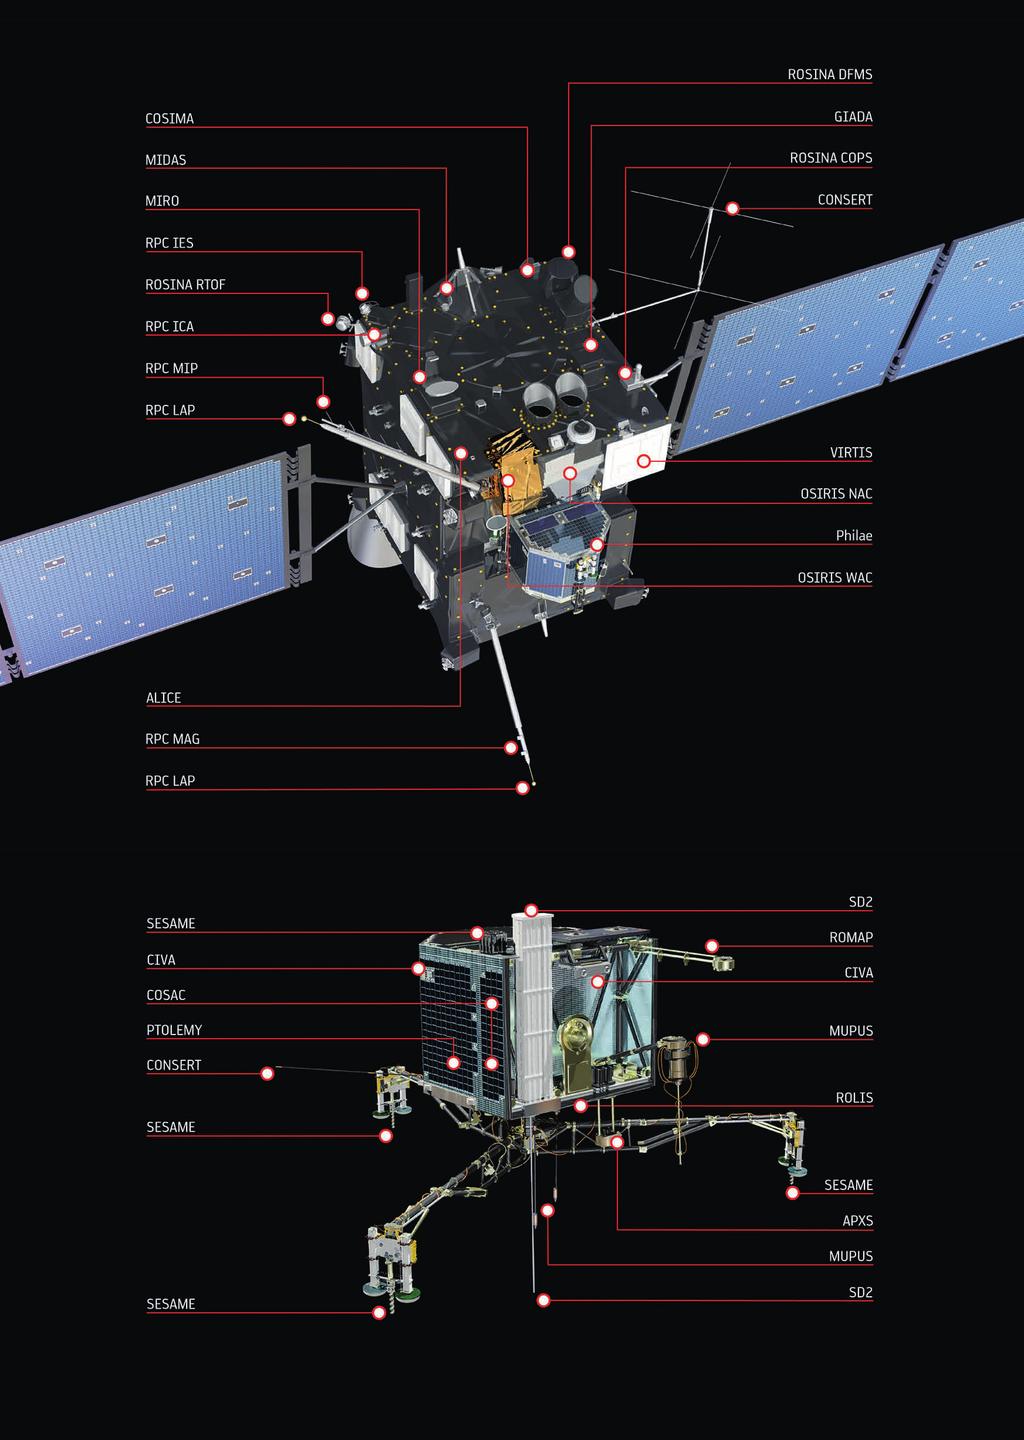 DIE BORDINSTRUMENTE von Rosetta OSIRIS* Kamerasystem mit Tele- und Weitwinkelkamera ALICE UV-Spektrometer VIRTIS Spektrometer für sichtbaren und infraroten Bereich MIRO* Mikrowellen-Spektrometer RSI